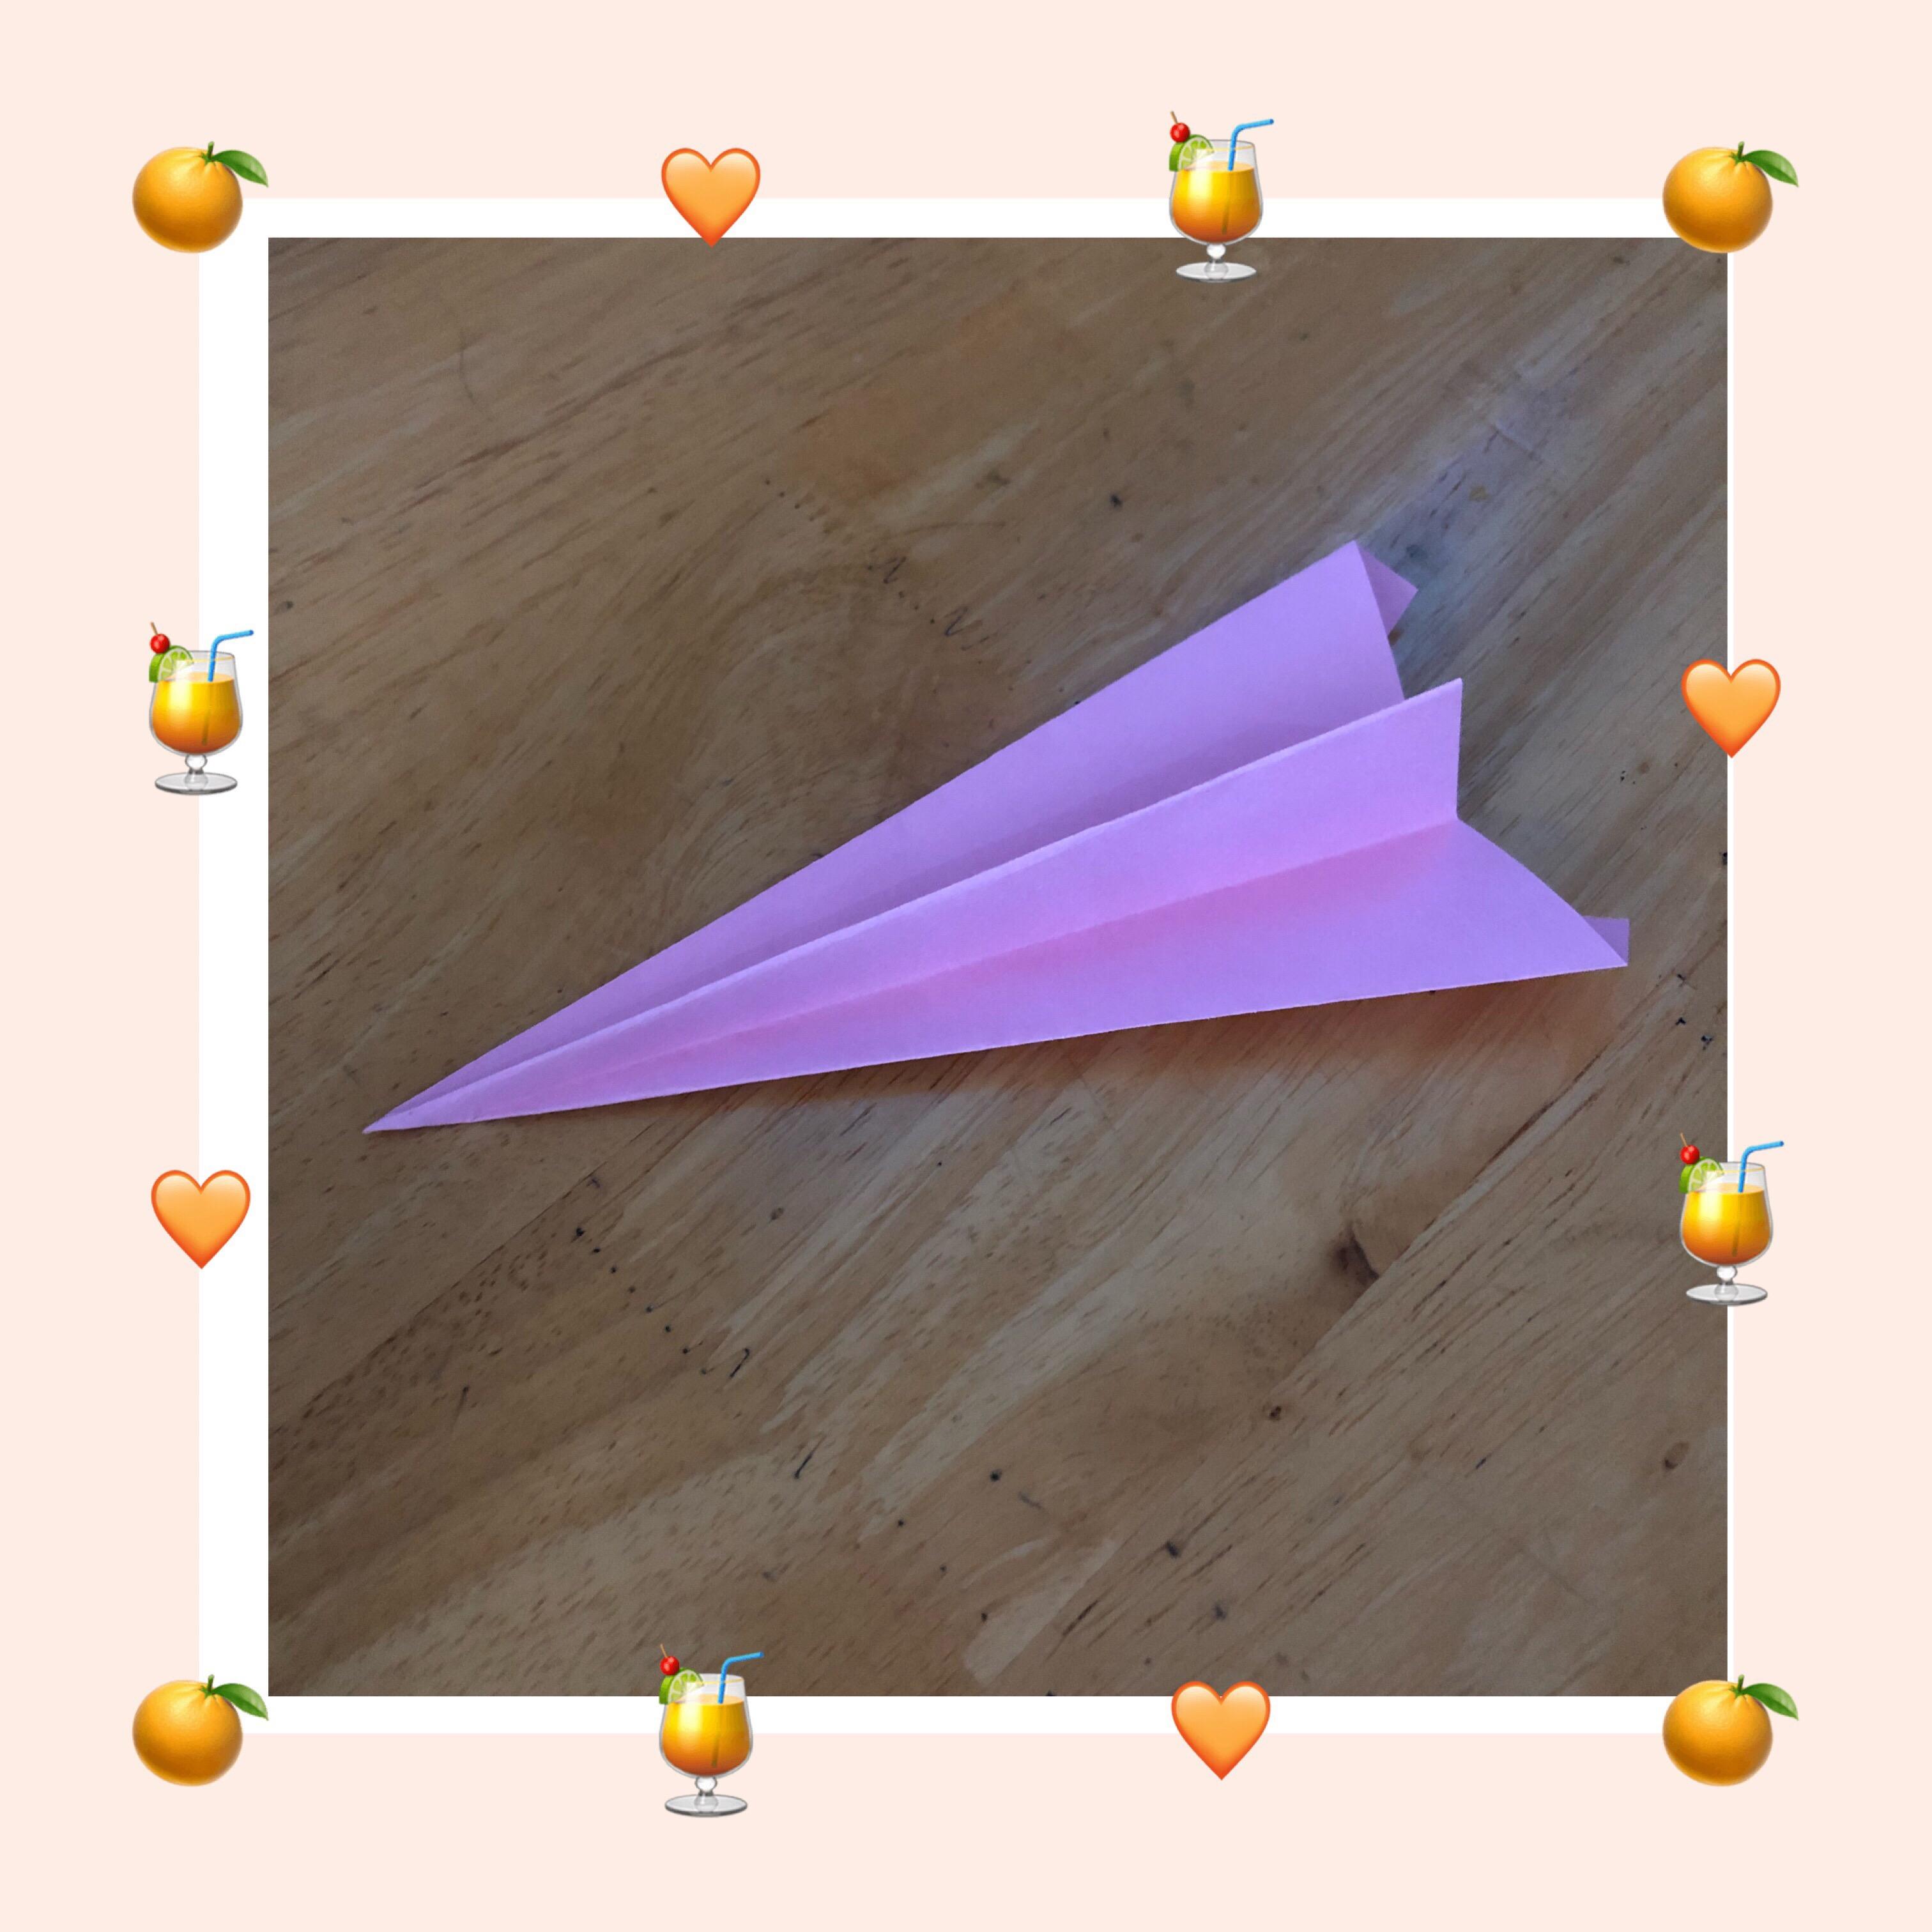 关于纸飞机钻圈用的纸飞机怎么做的信息